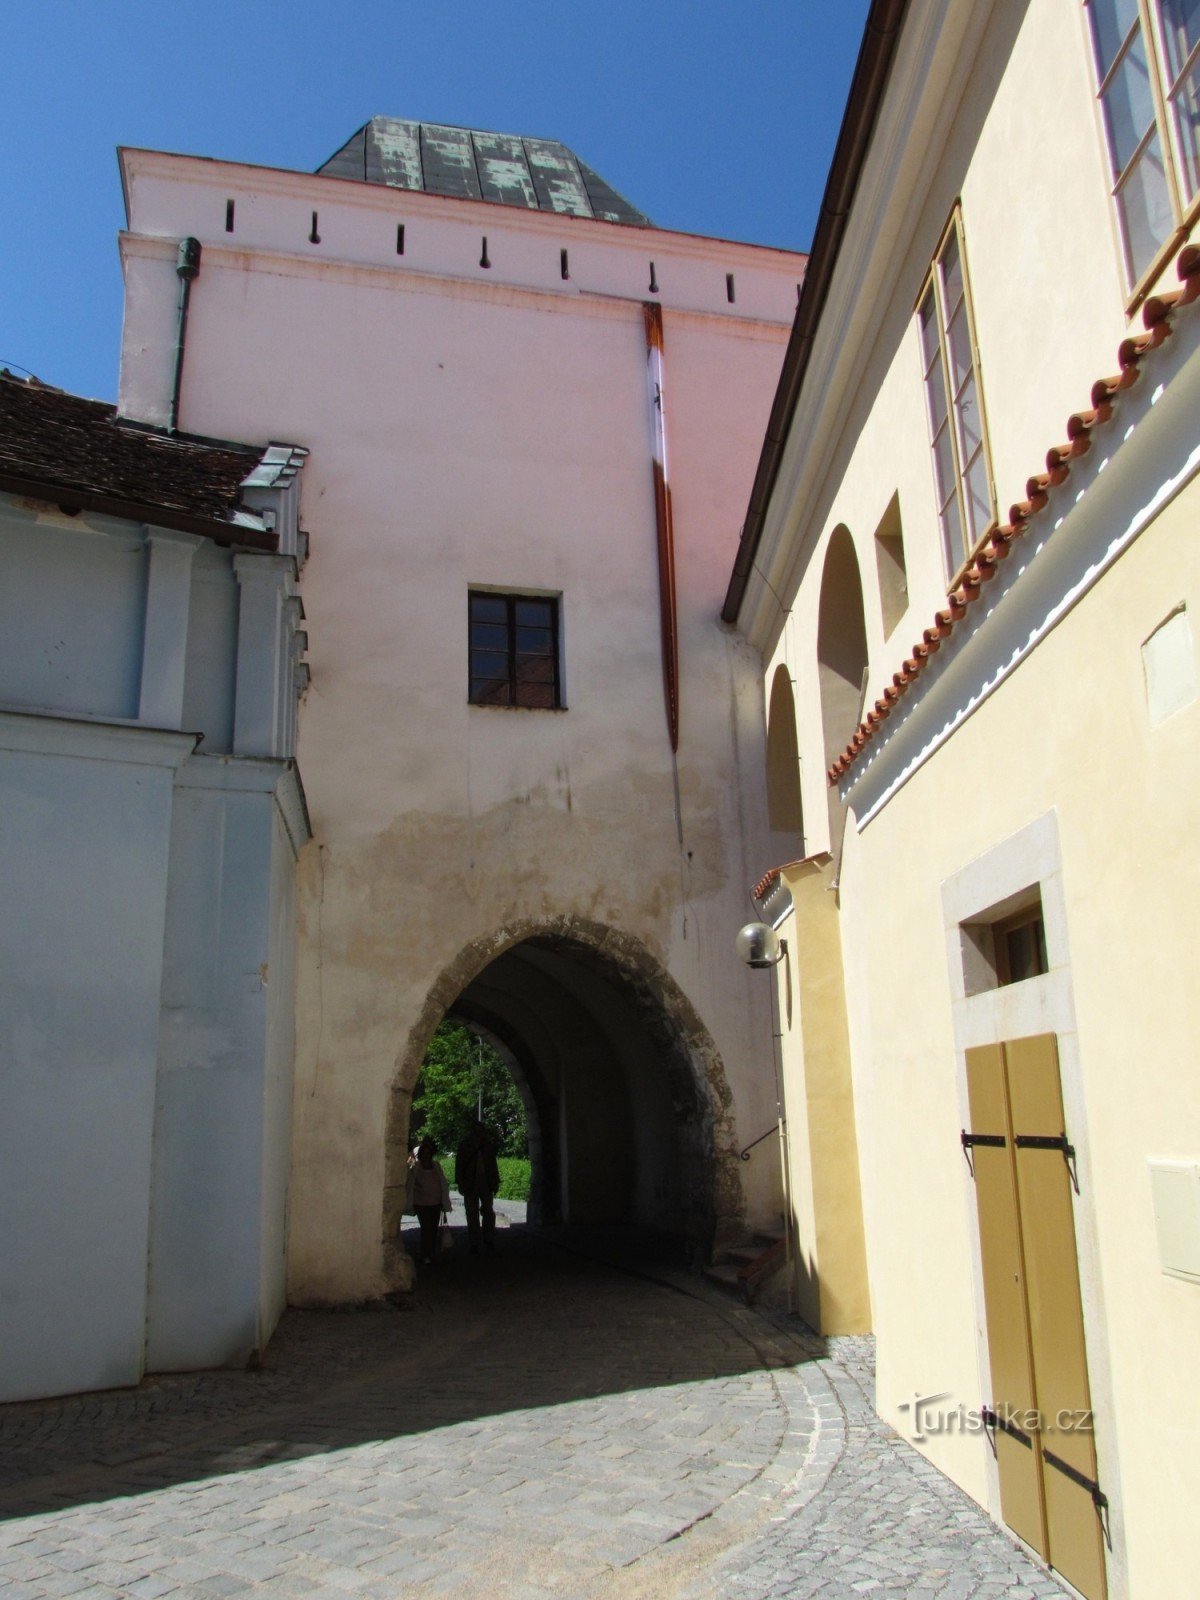 Visite du château de Pardubice